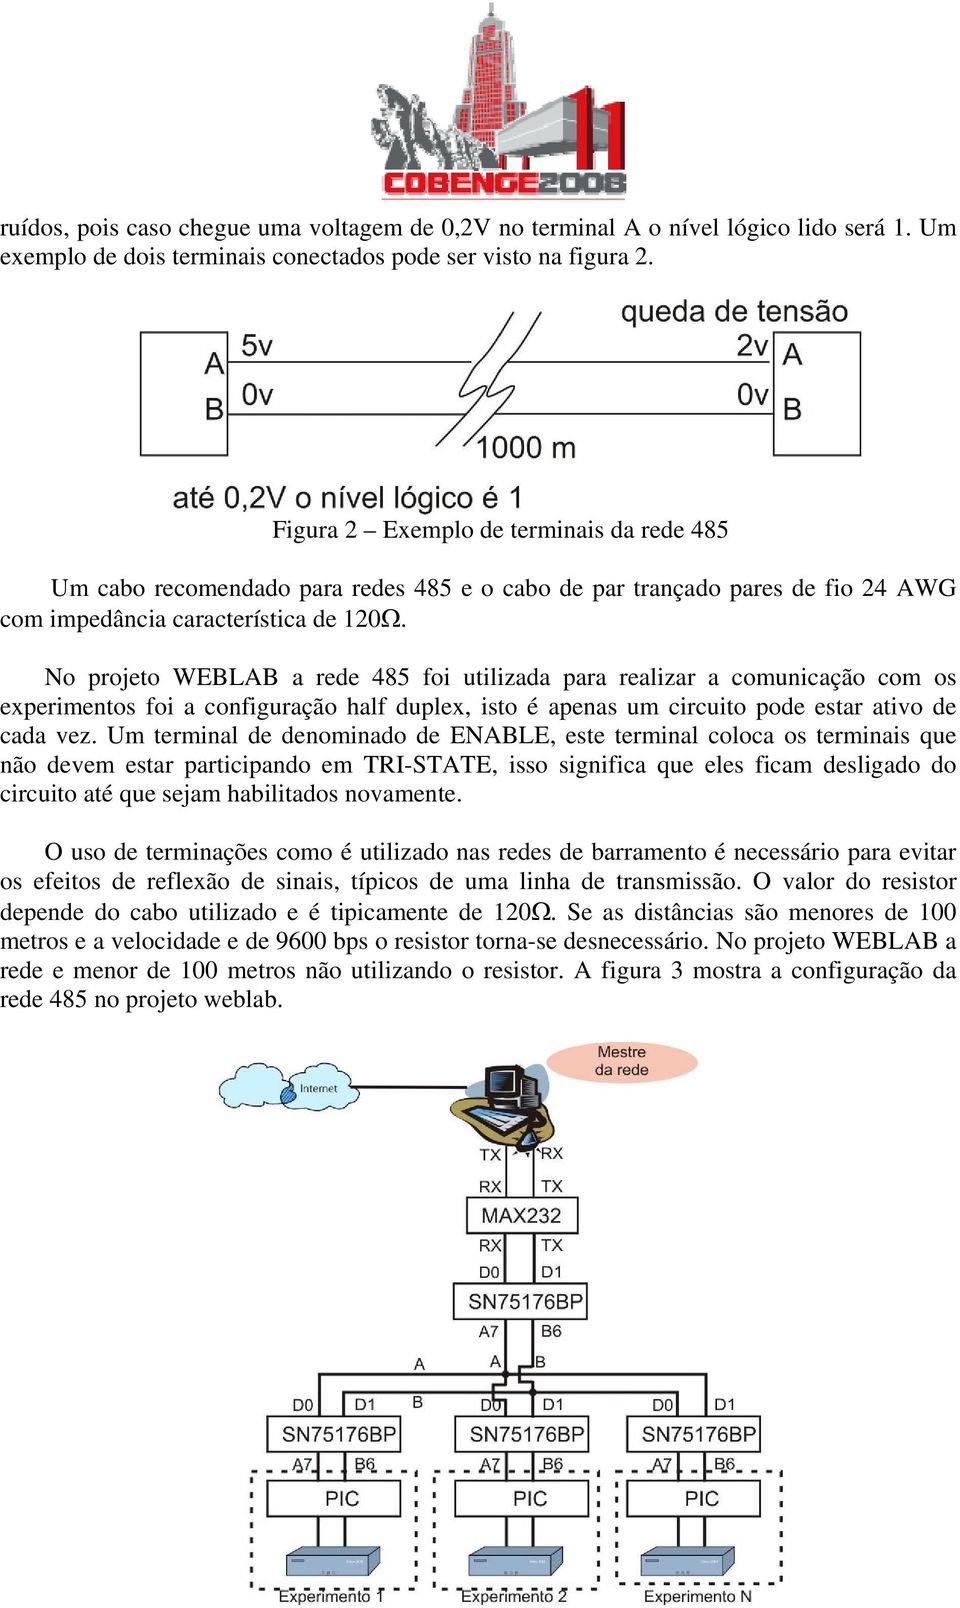 No projeto WEBLAB a rede 485 foi utilizada para realizar a comunicação com os experimentos foi a configuração half duplex, isto é apenas um circuito pode estar ativo de cada vez.